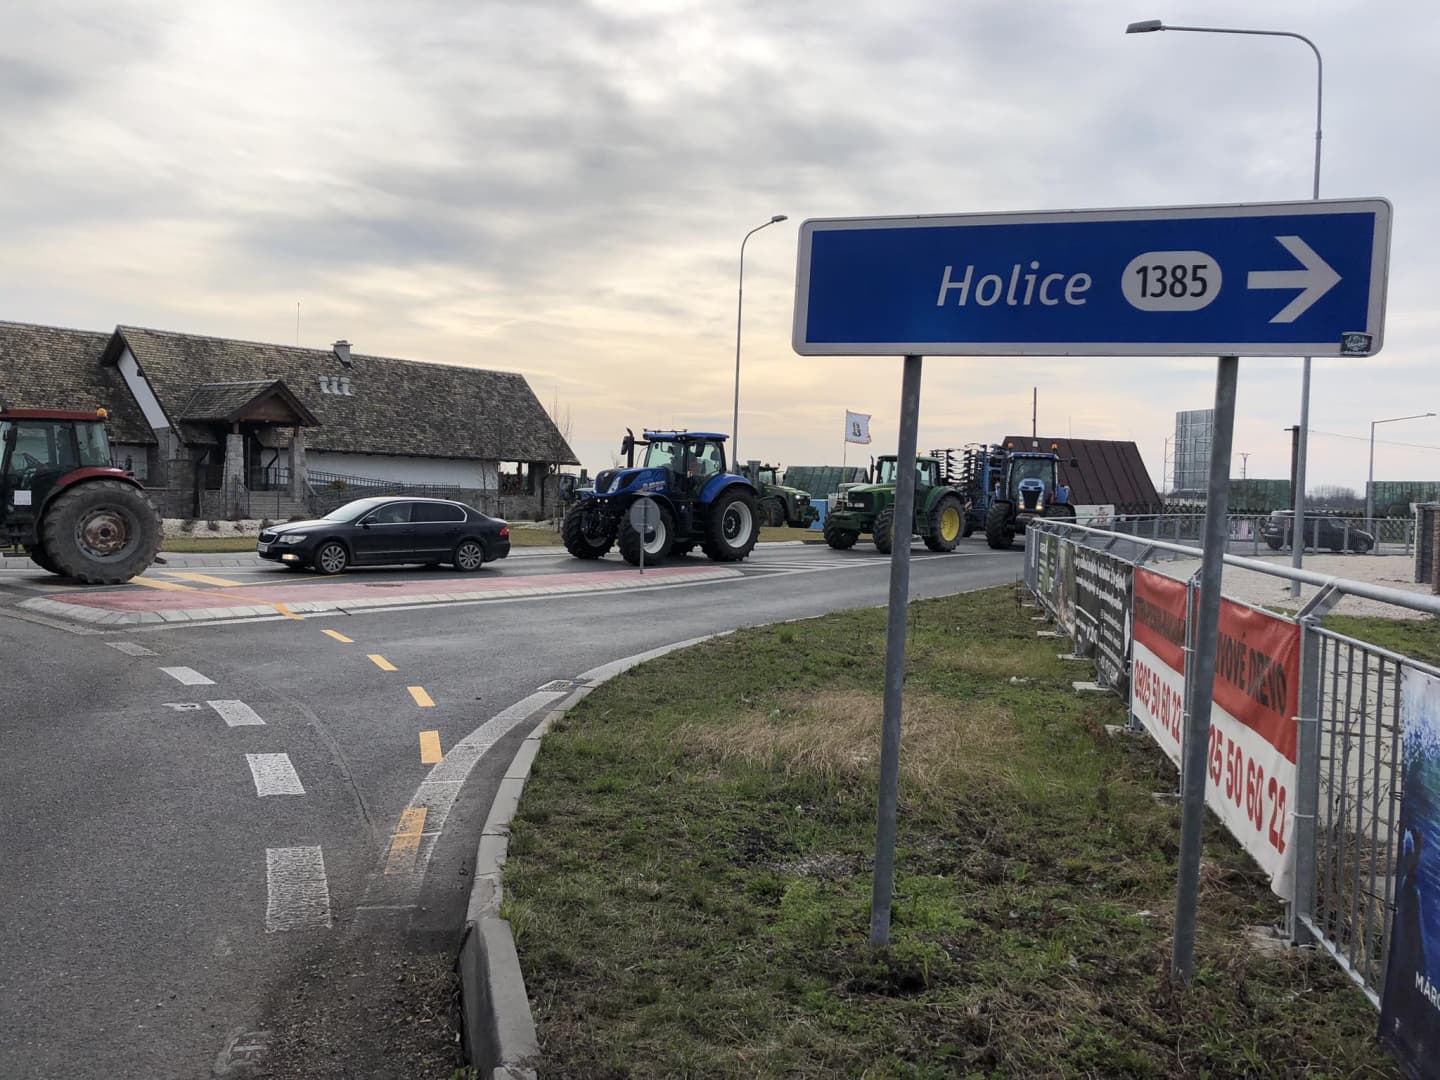 GAZDATÜNTETÉS: Megbénult a forgalom az R7-esen, hosszú sorokban araszoltak a traktorok országszerte (ÉLŐ)